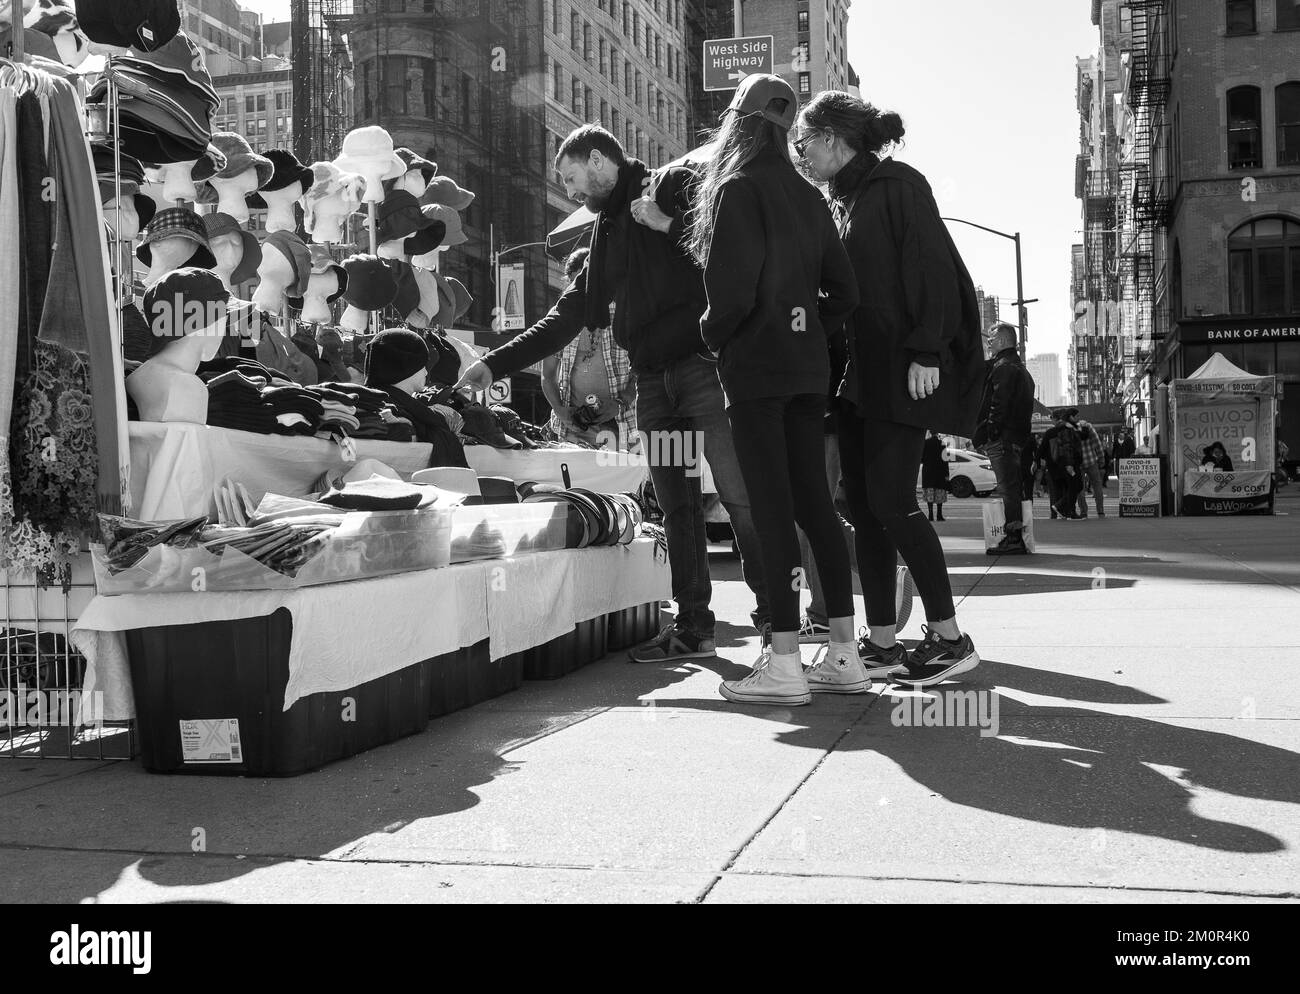 Groupe de jeunes achetant des casquettes et des chapeaux auprès d'un vendeur de rue sur le trottoir à Manhattan, New York. Photographie de rue en noir et blanc. Banque D'Images